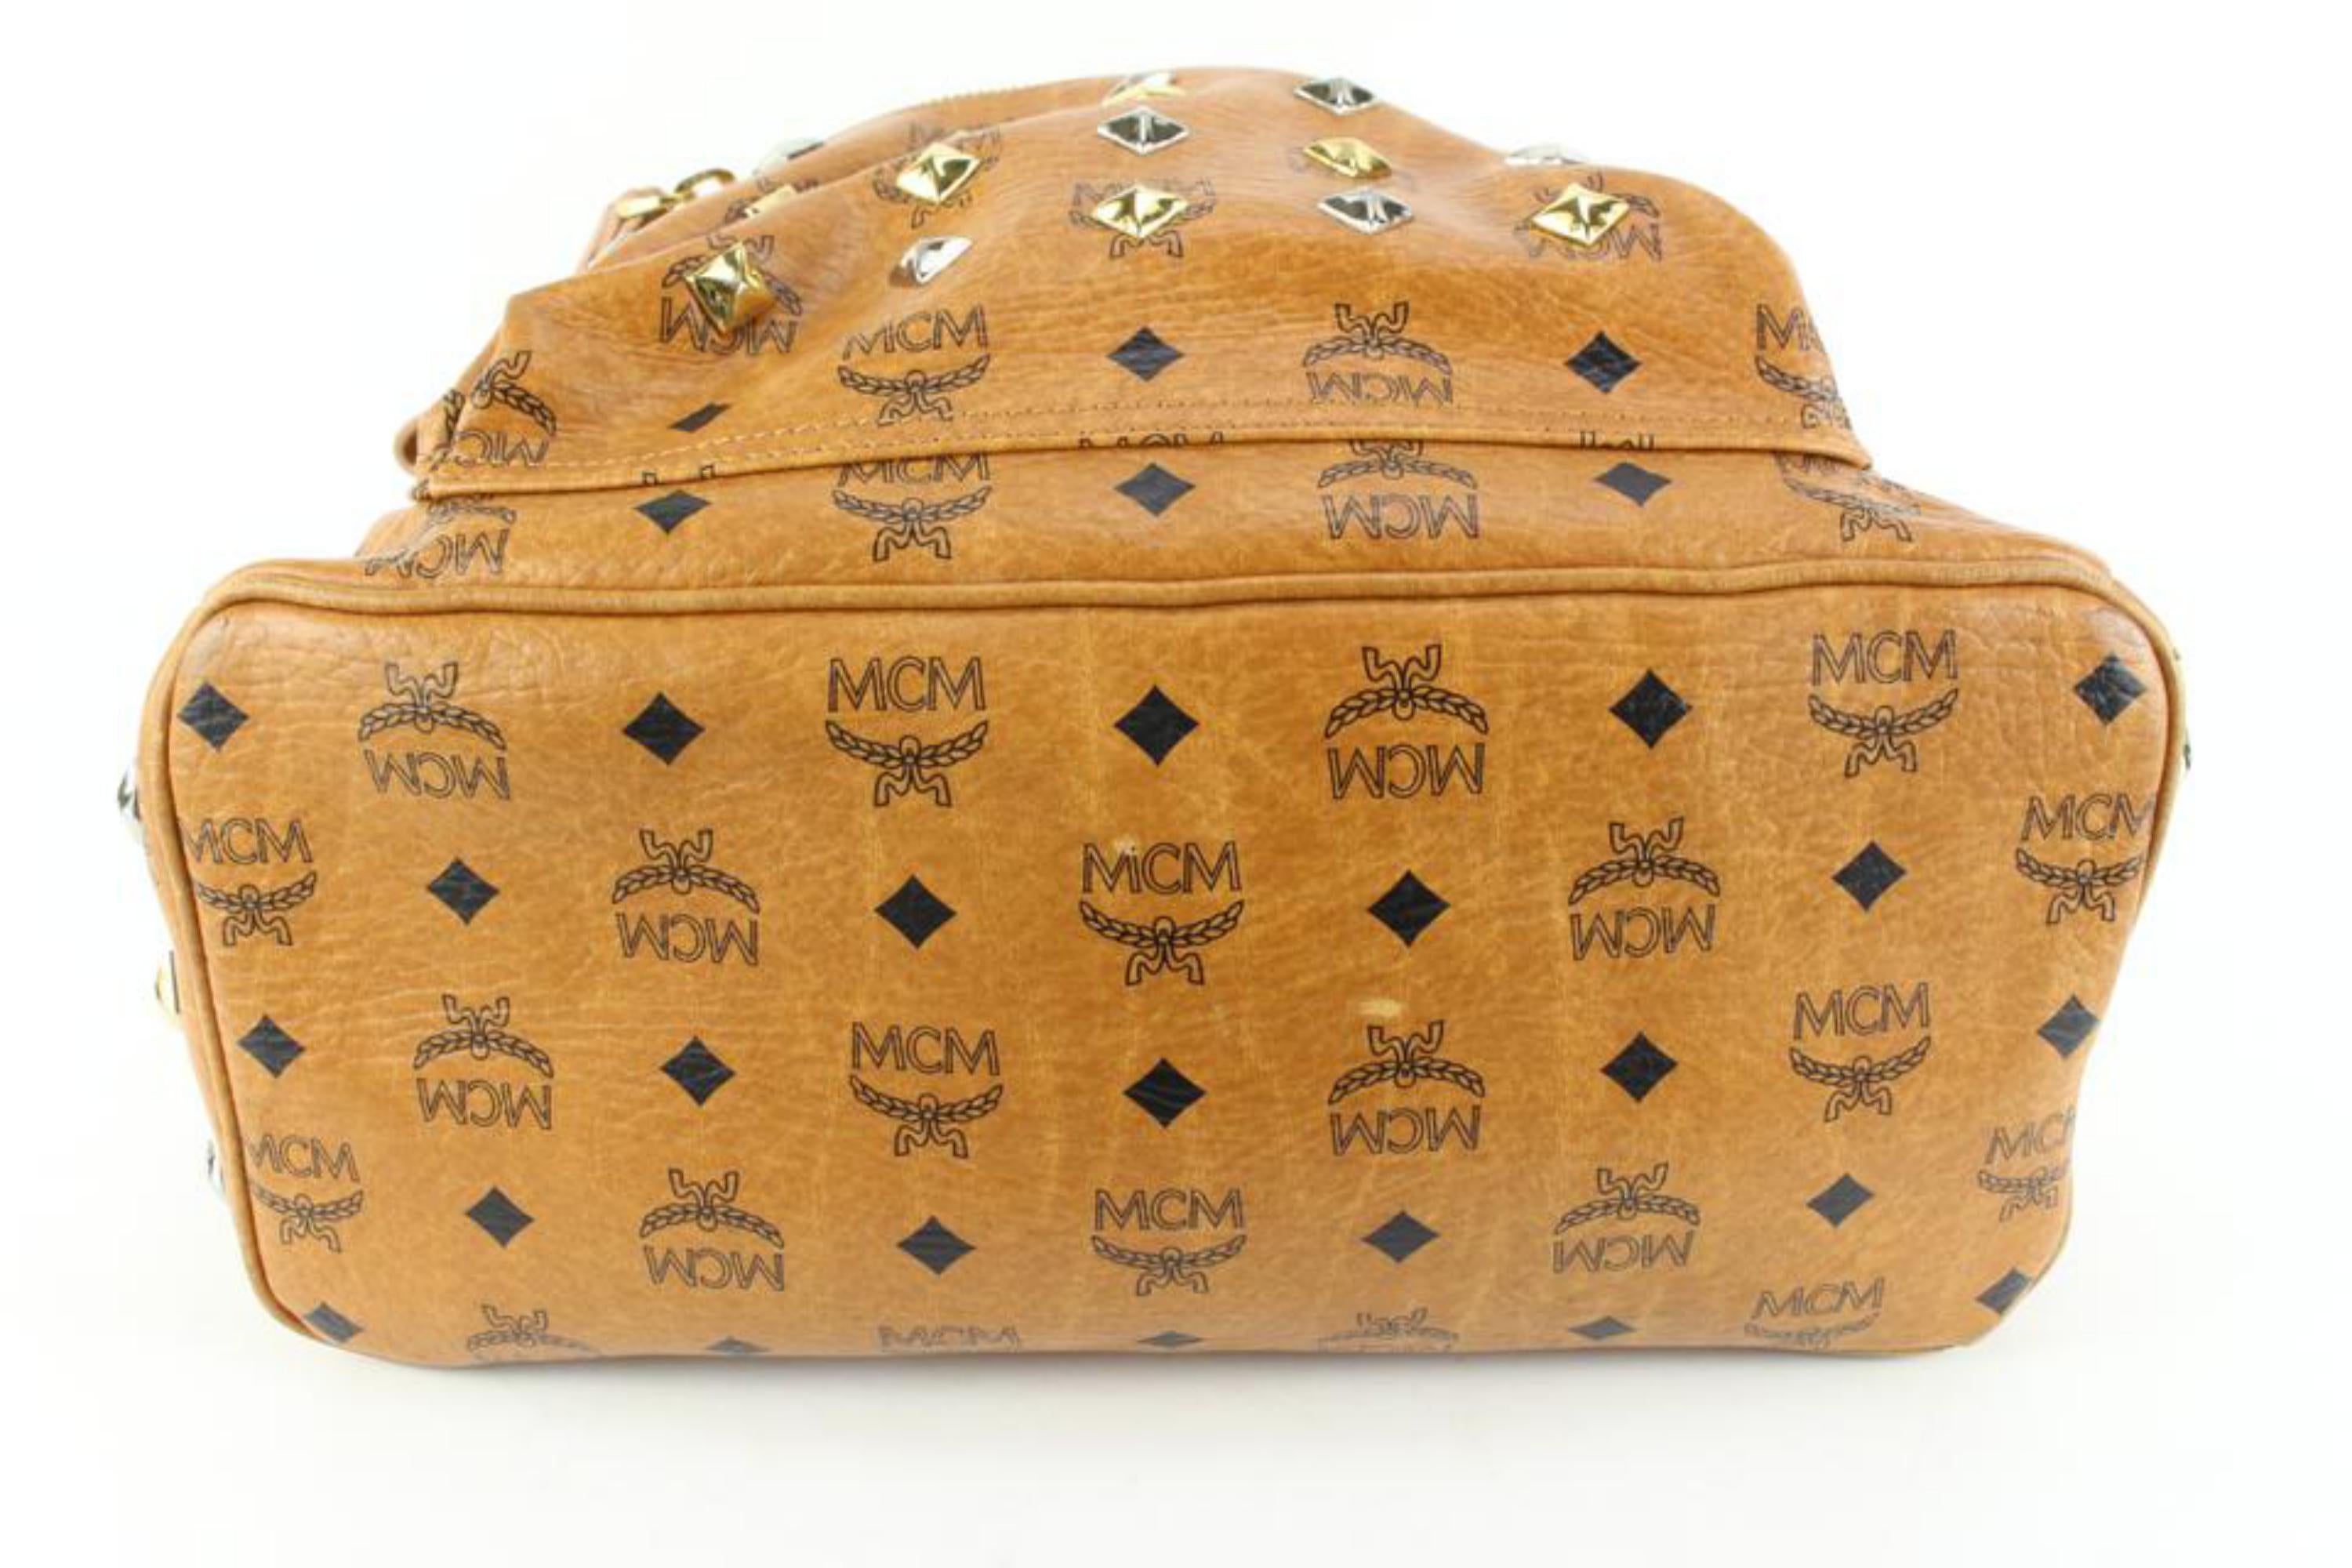 Real or Fake MCM backpack? : r/LegitCheck